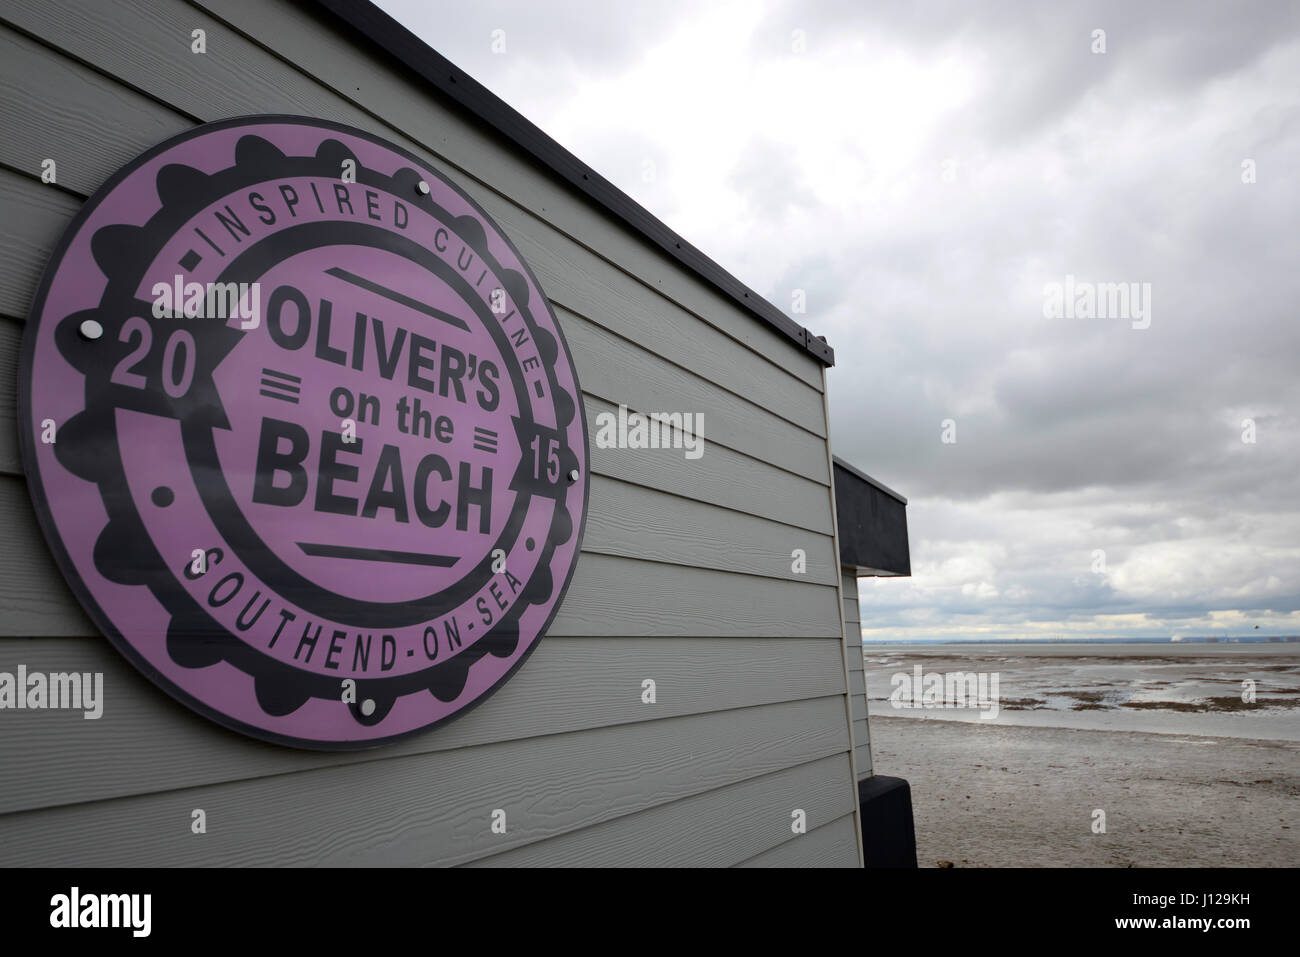 Oliver's on the Beach ist ein kleines Café an der Küste von Southend, das von Jamie Olivers Eltern betrieben wird. Bewölkt Stockfoto